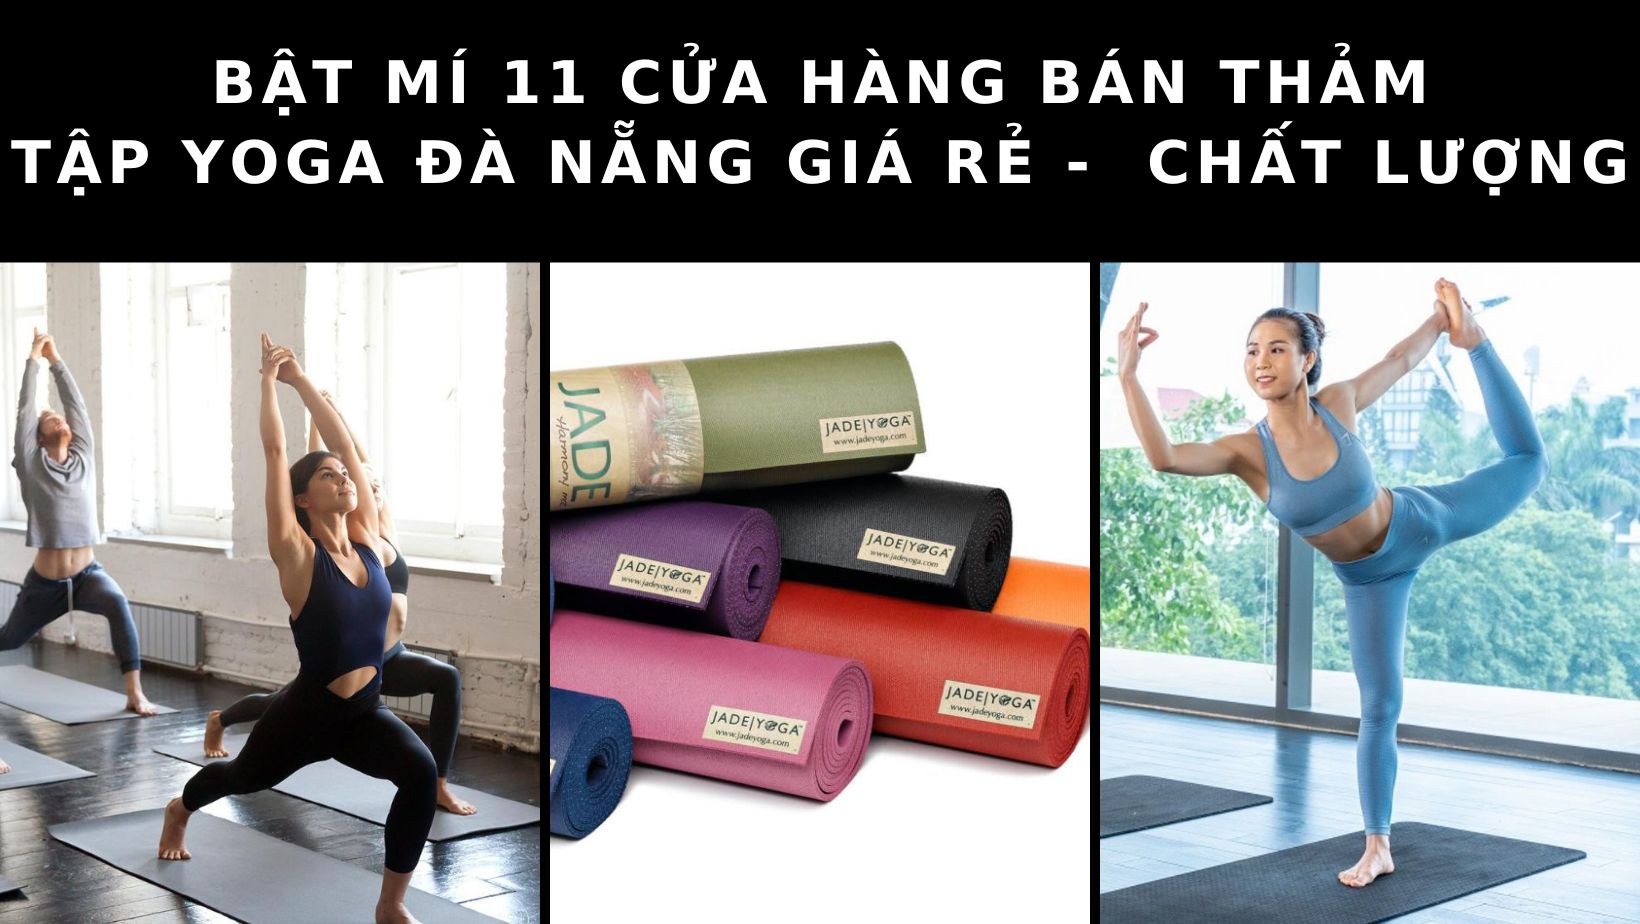 Cửa hàng bán thảm tập yoga Đà Nẵng: Top 11 cửa hàng bán thảm tập giá rẻ – chất lượng